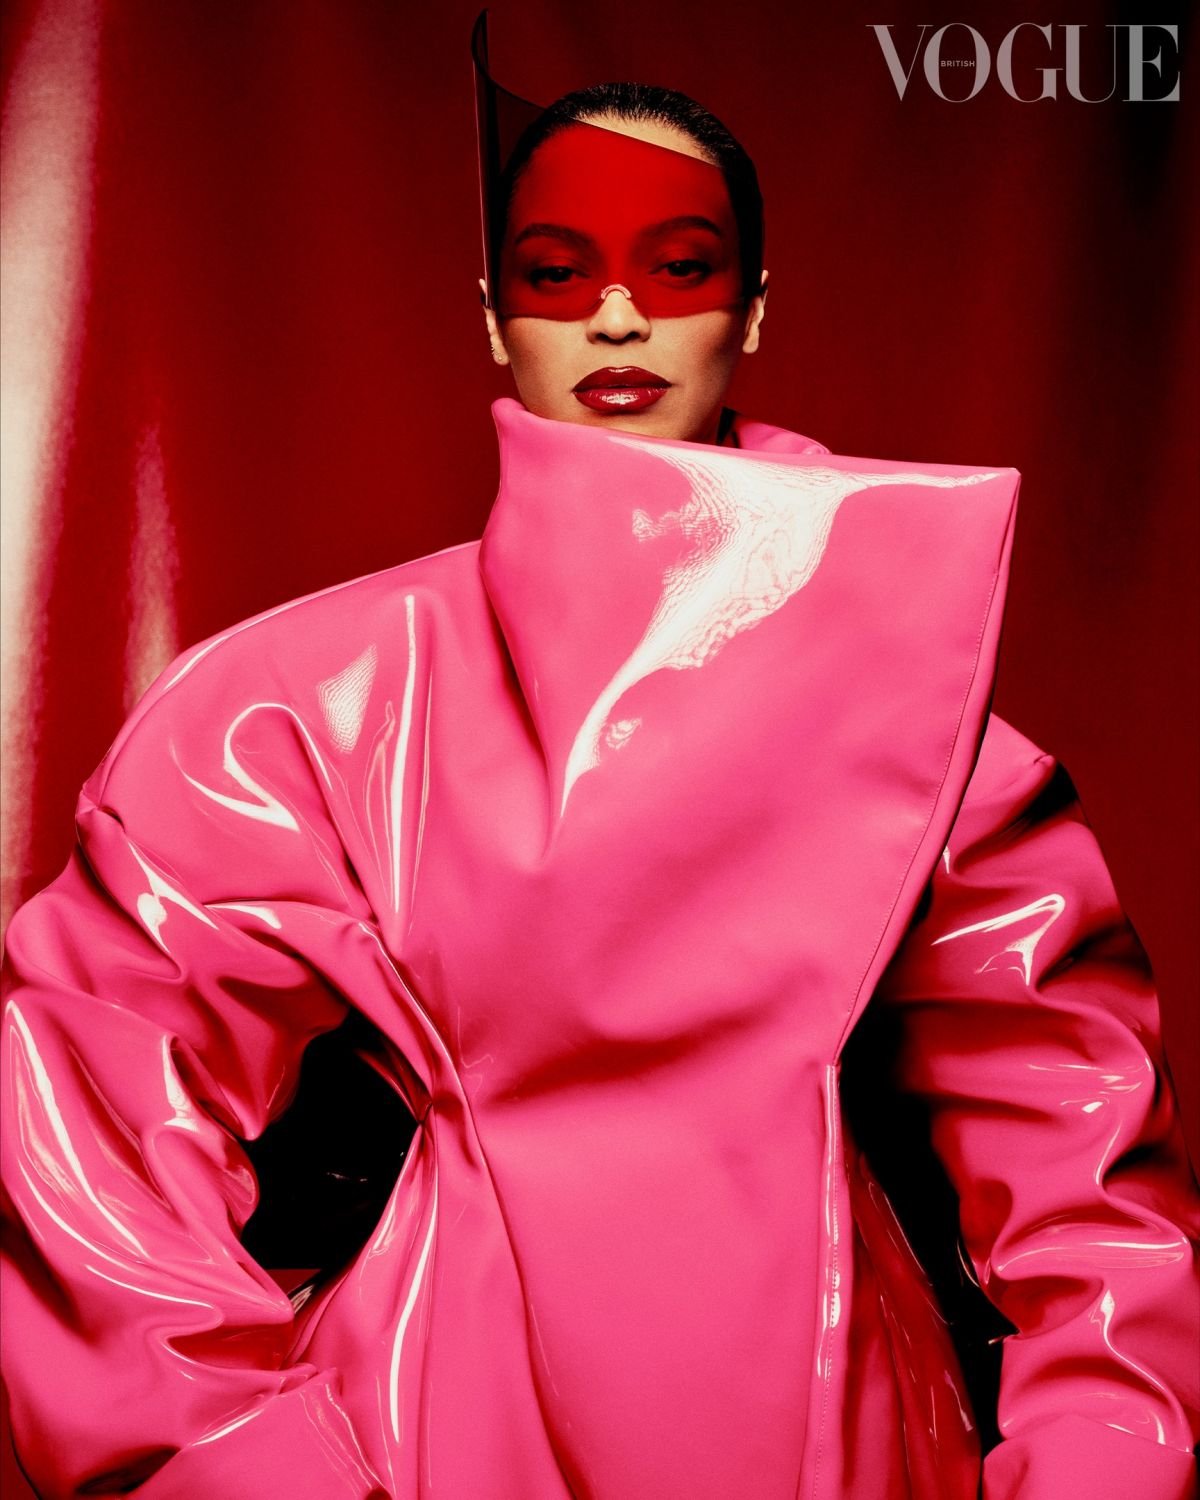 Популярная певица Бейонсе предстала в необычных для себя образах в журнале Vogue